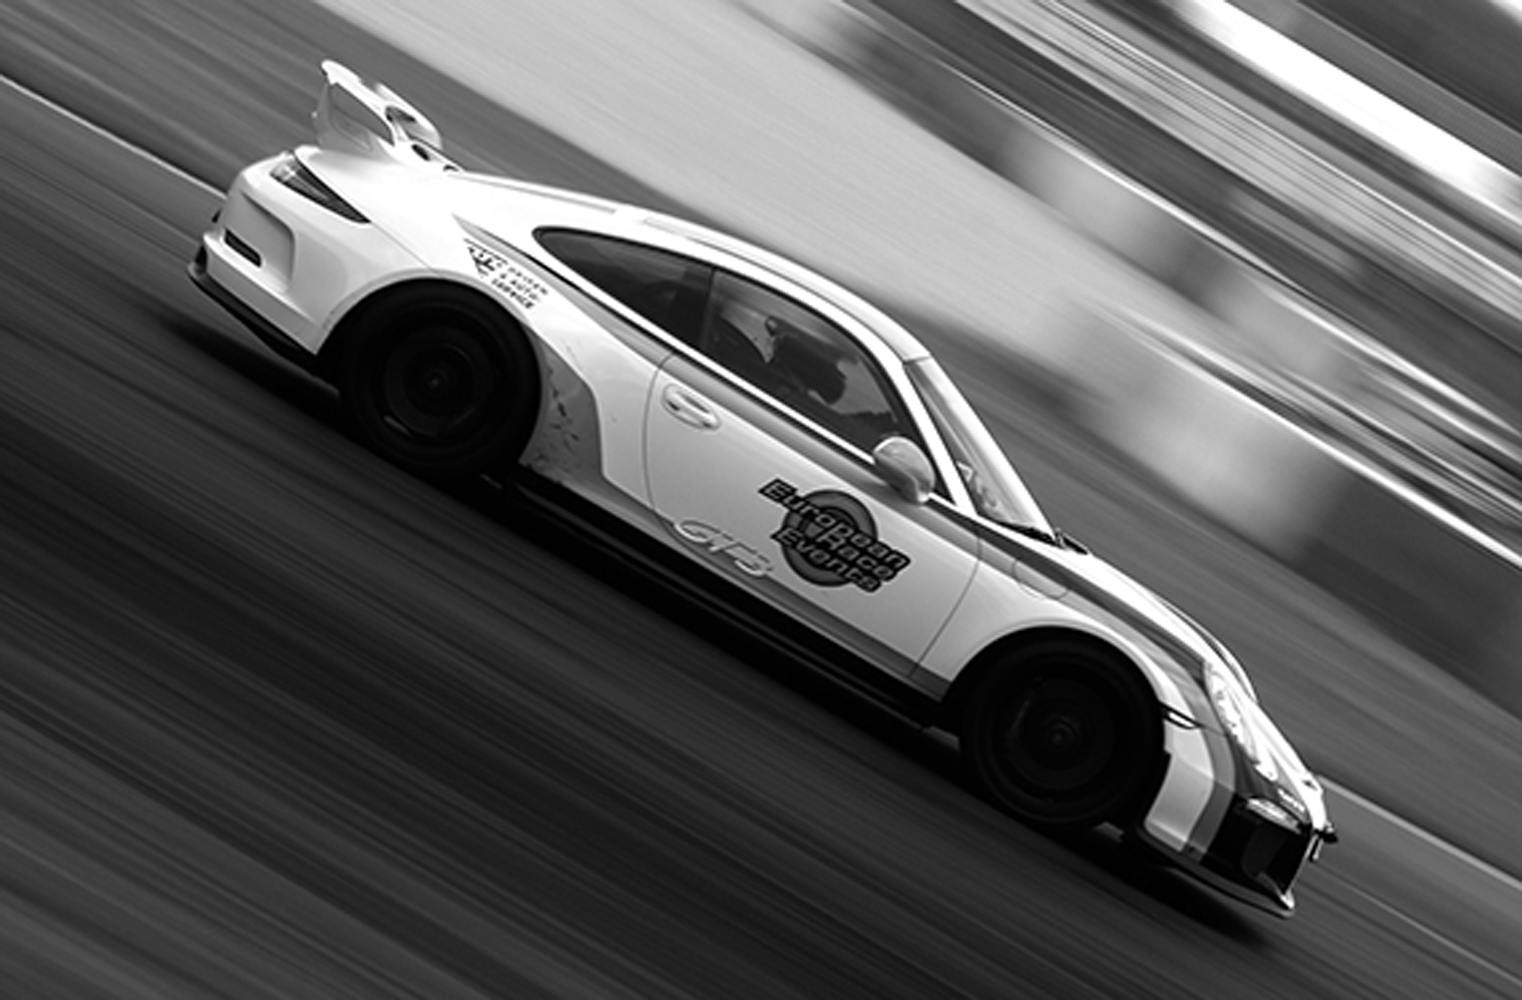 Porsche 911 GT3 Clubsport Rennstrecke fahren | 3 Runden